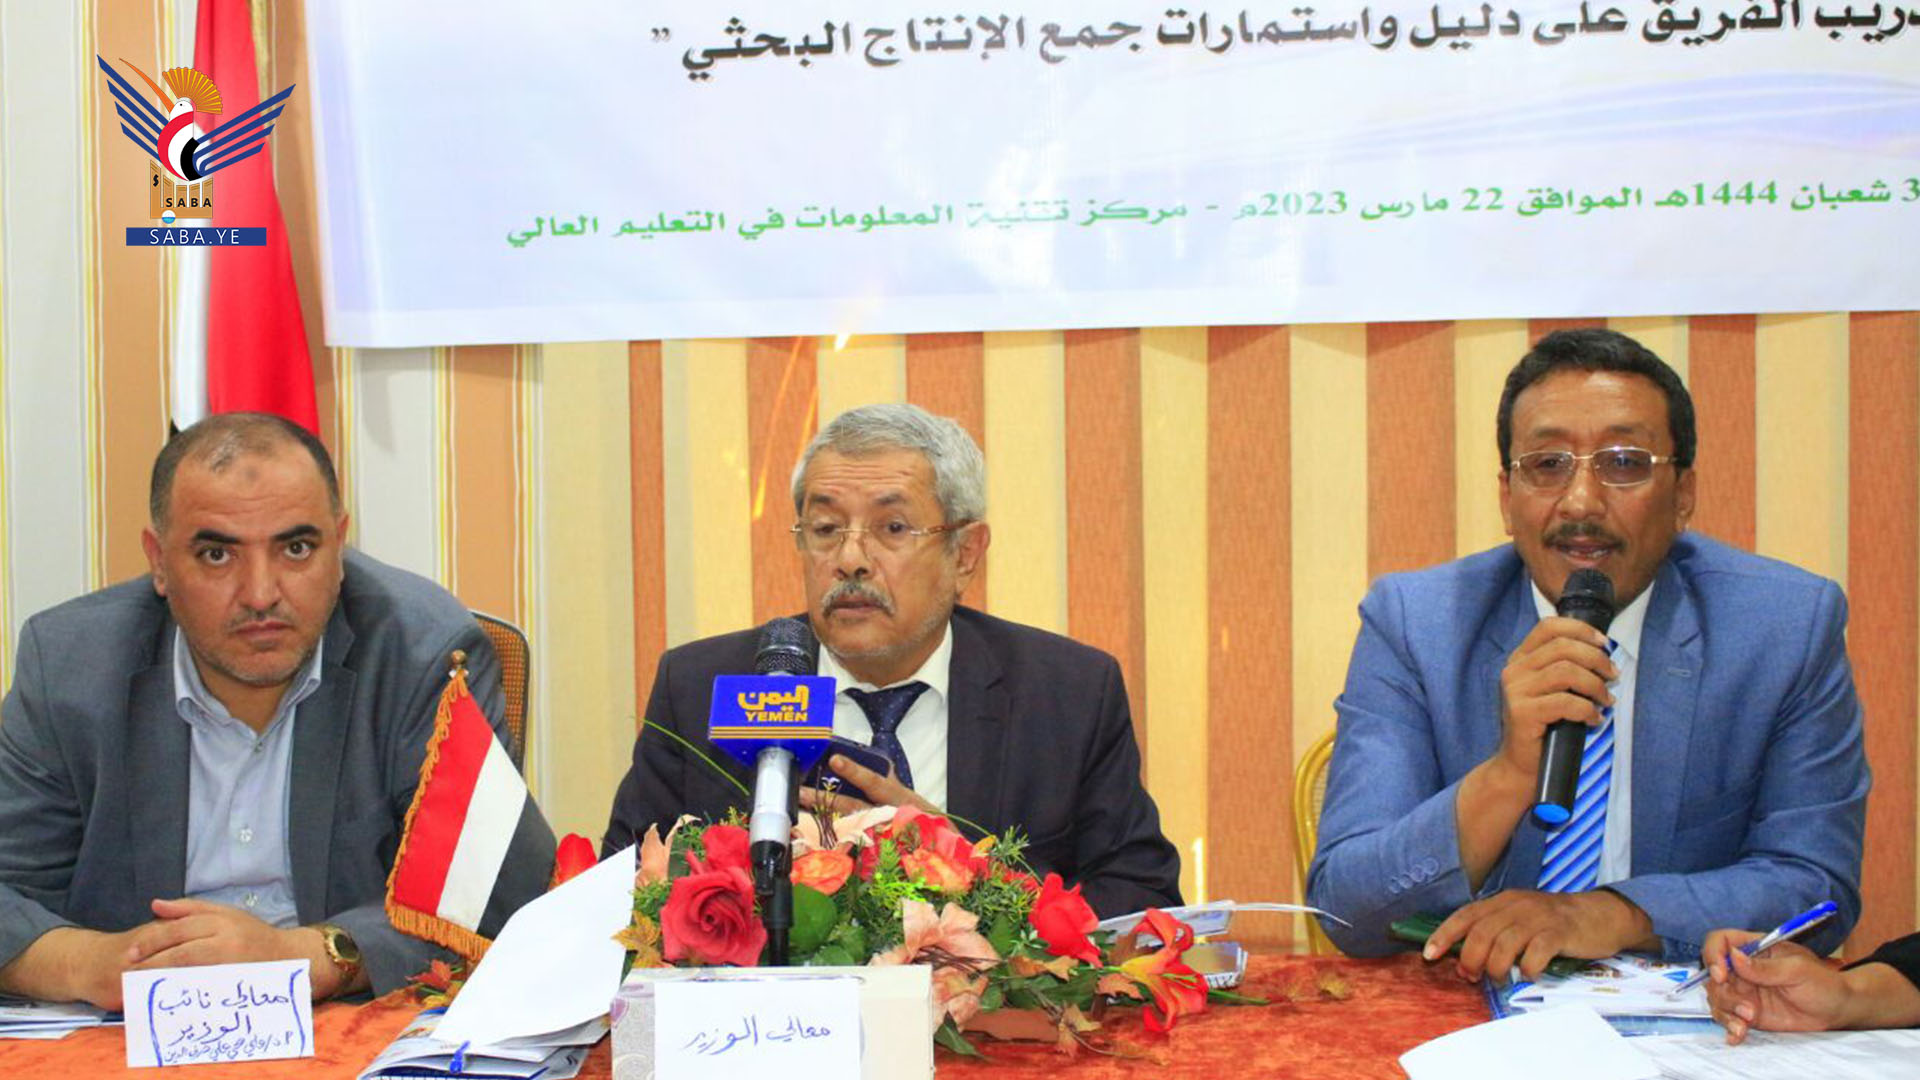 ورشة تدريبية على دليل واستمارات جمع الإنتاج البحثي من الجامعات والمراكز اليمنية